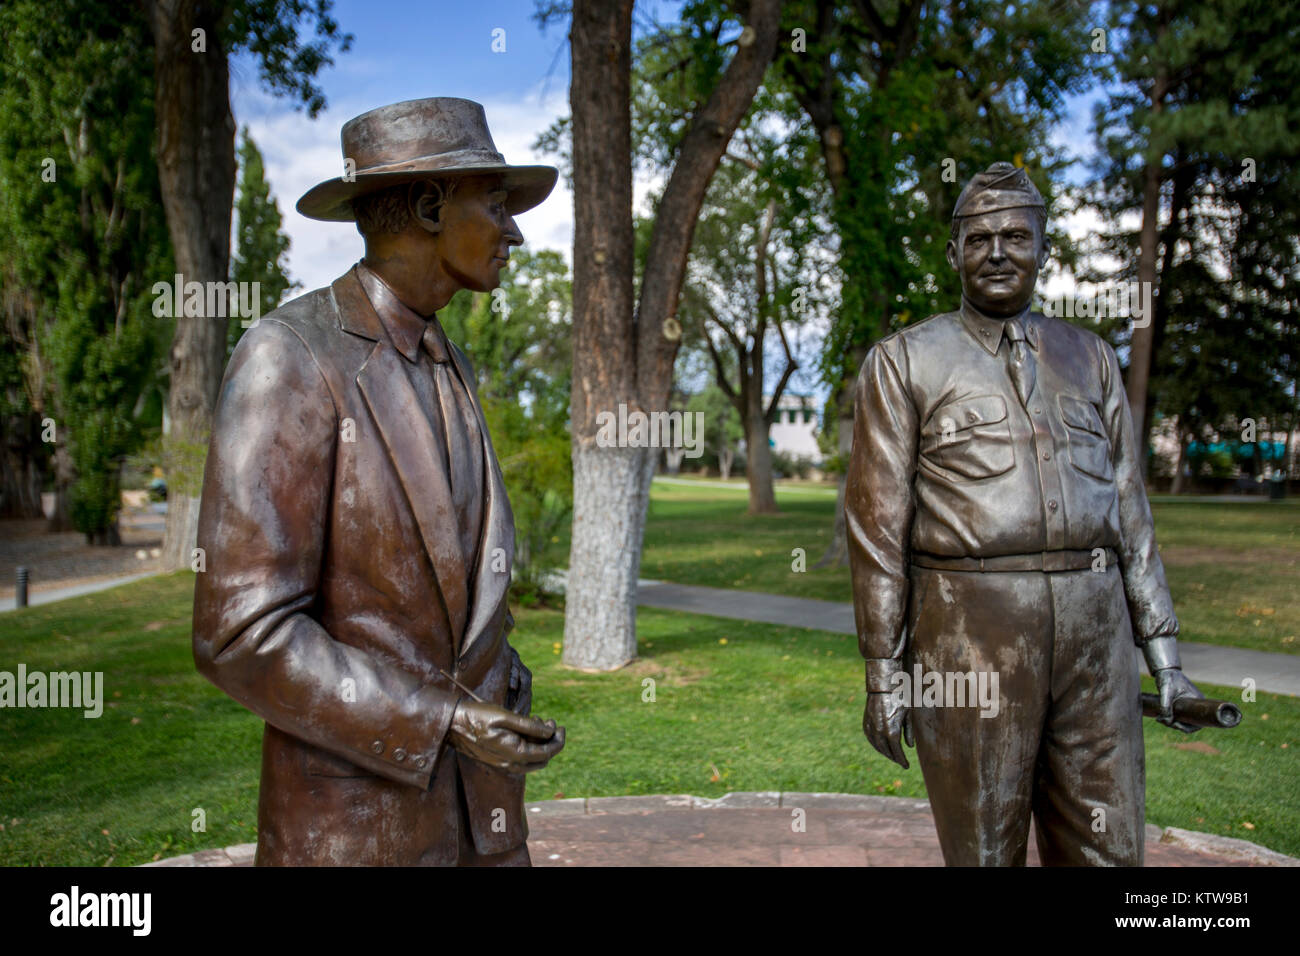 Statues of General Leslie R. Groves and Dr. J. Robert Oppenheimer Stock Photo